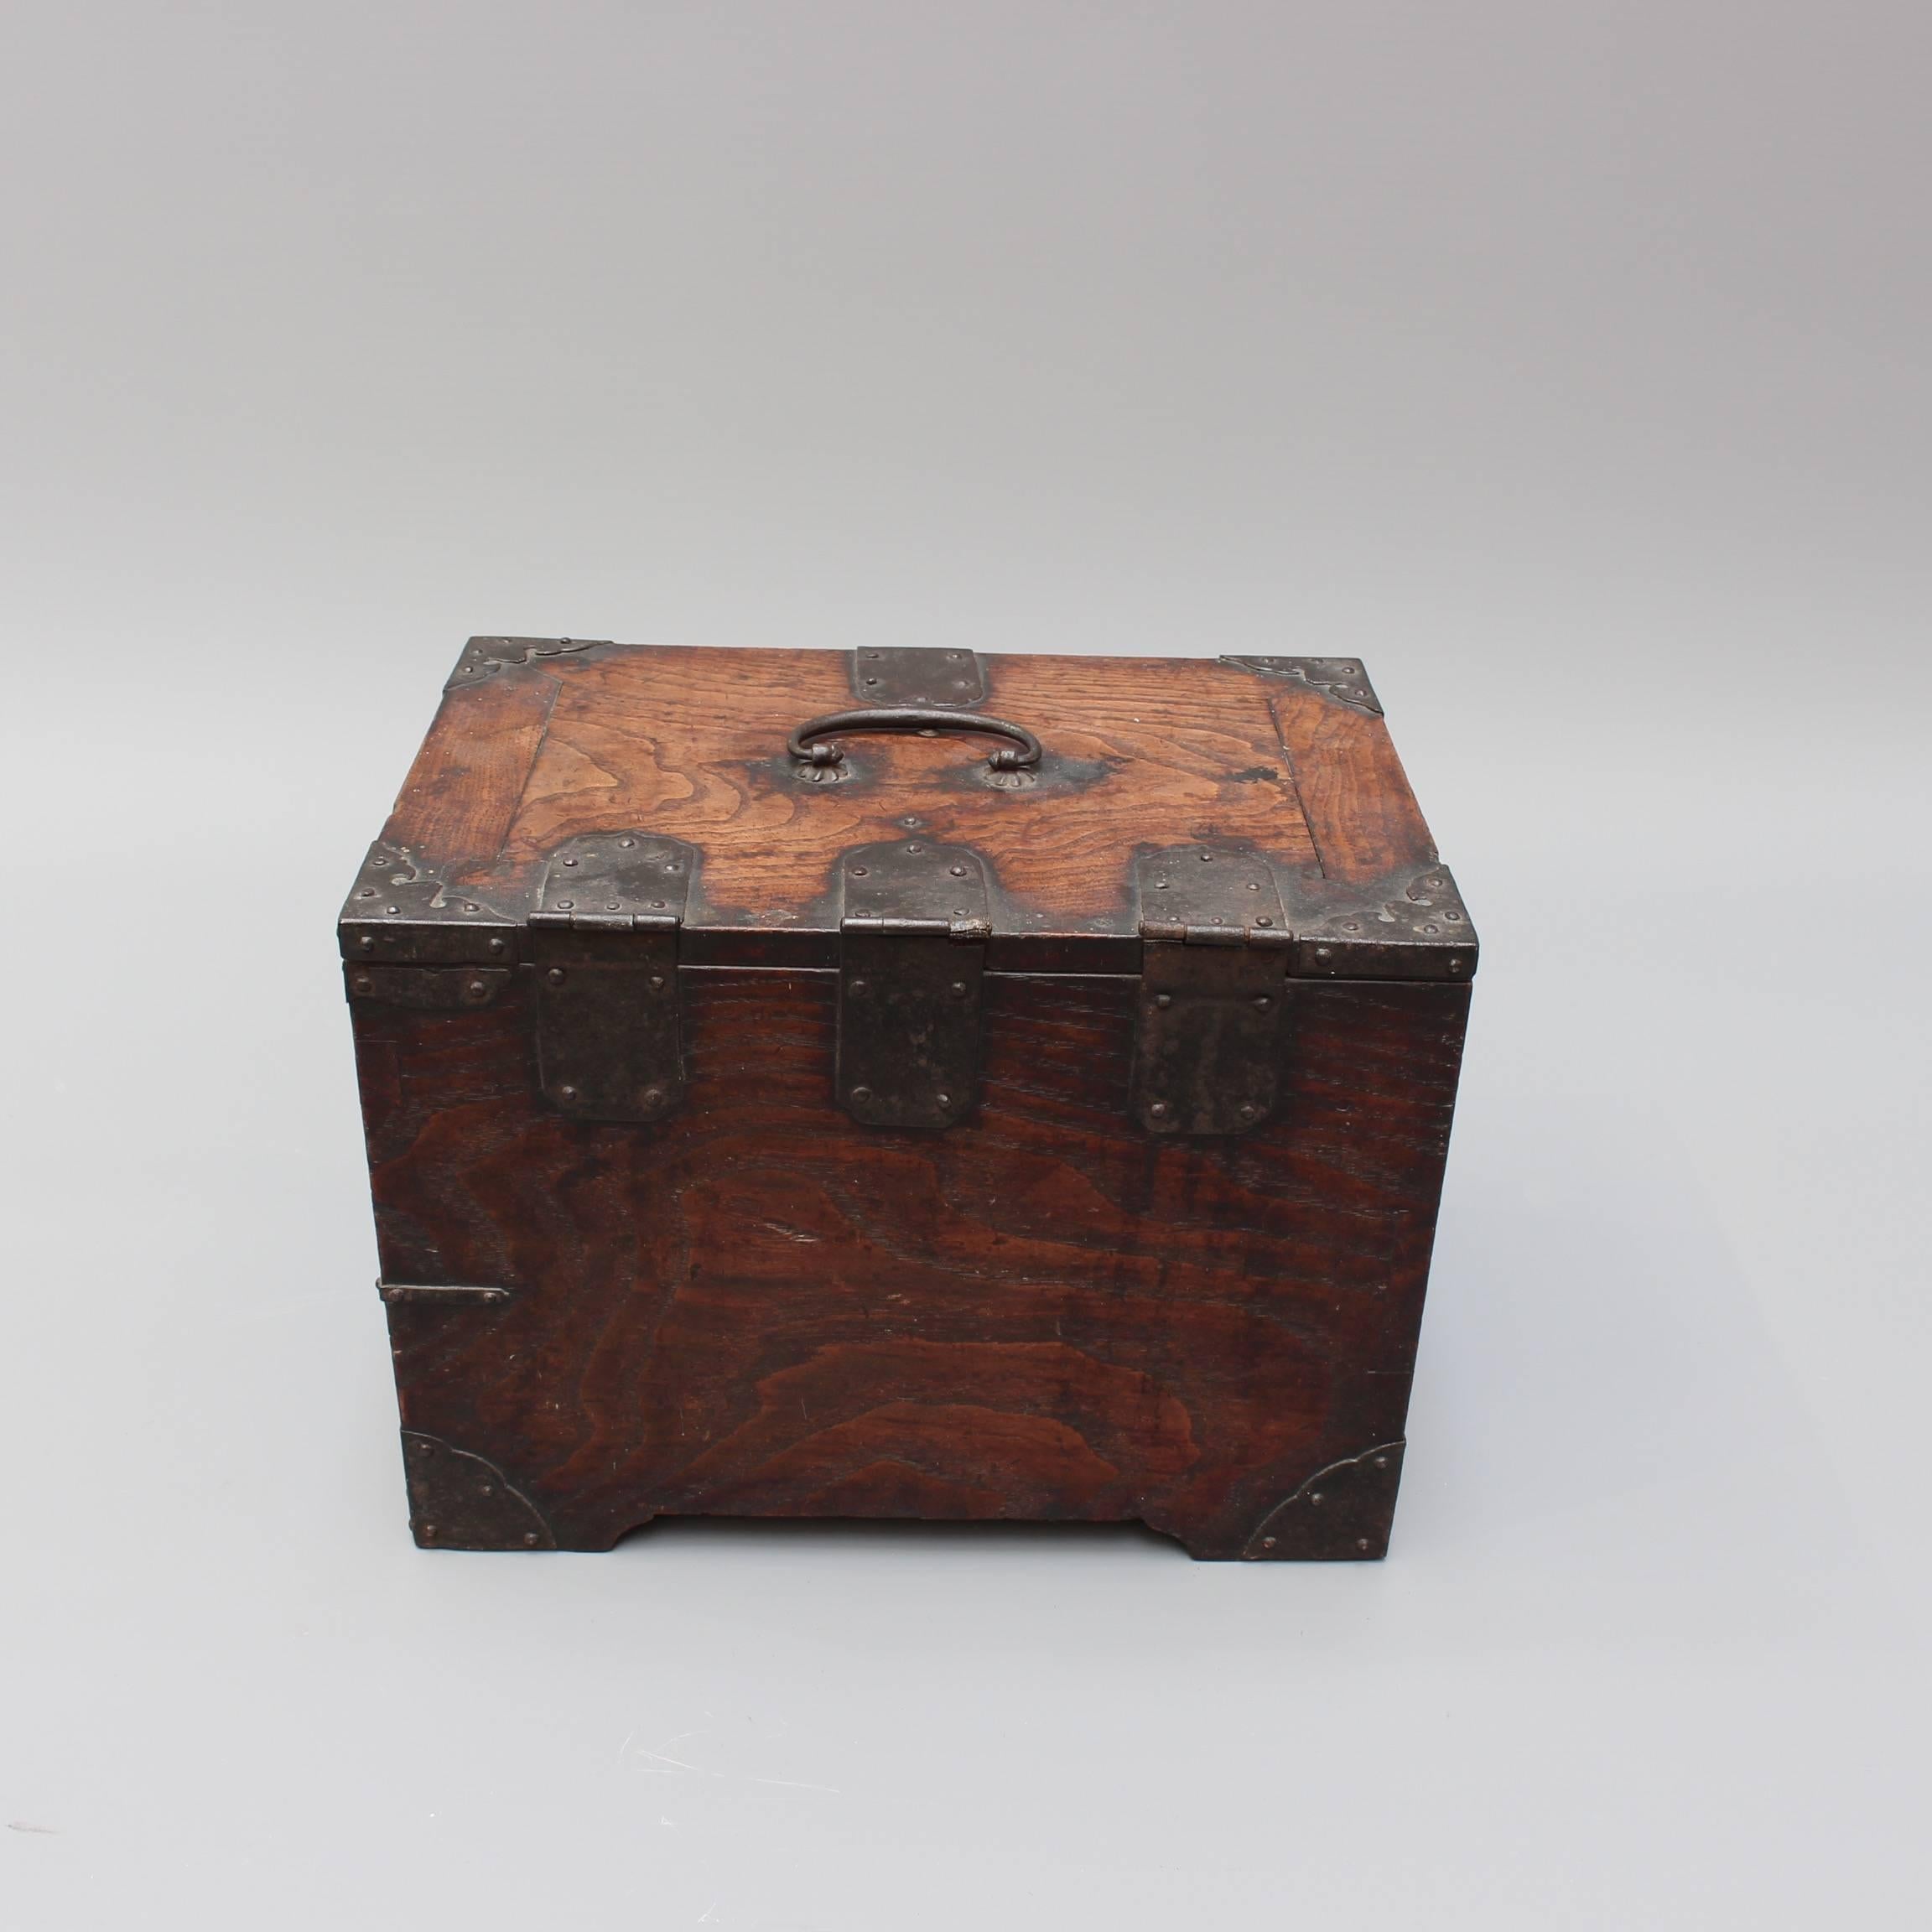 Antique Japanese Wooden Writing Box with Decorative Hardware 'Meiji Era' 7